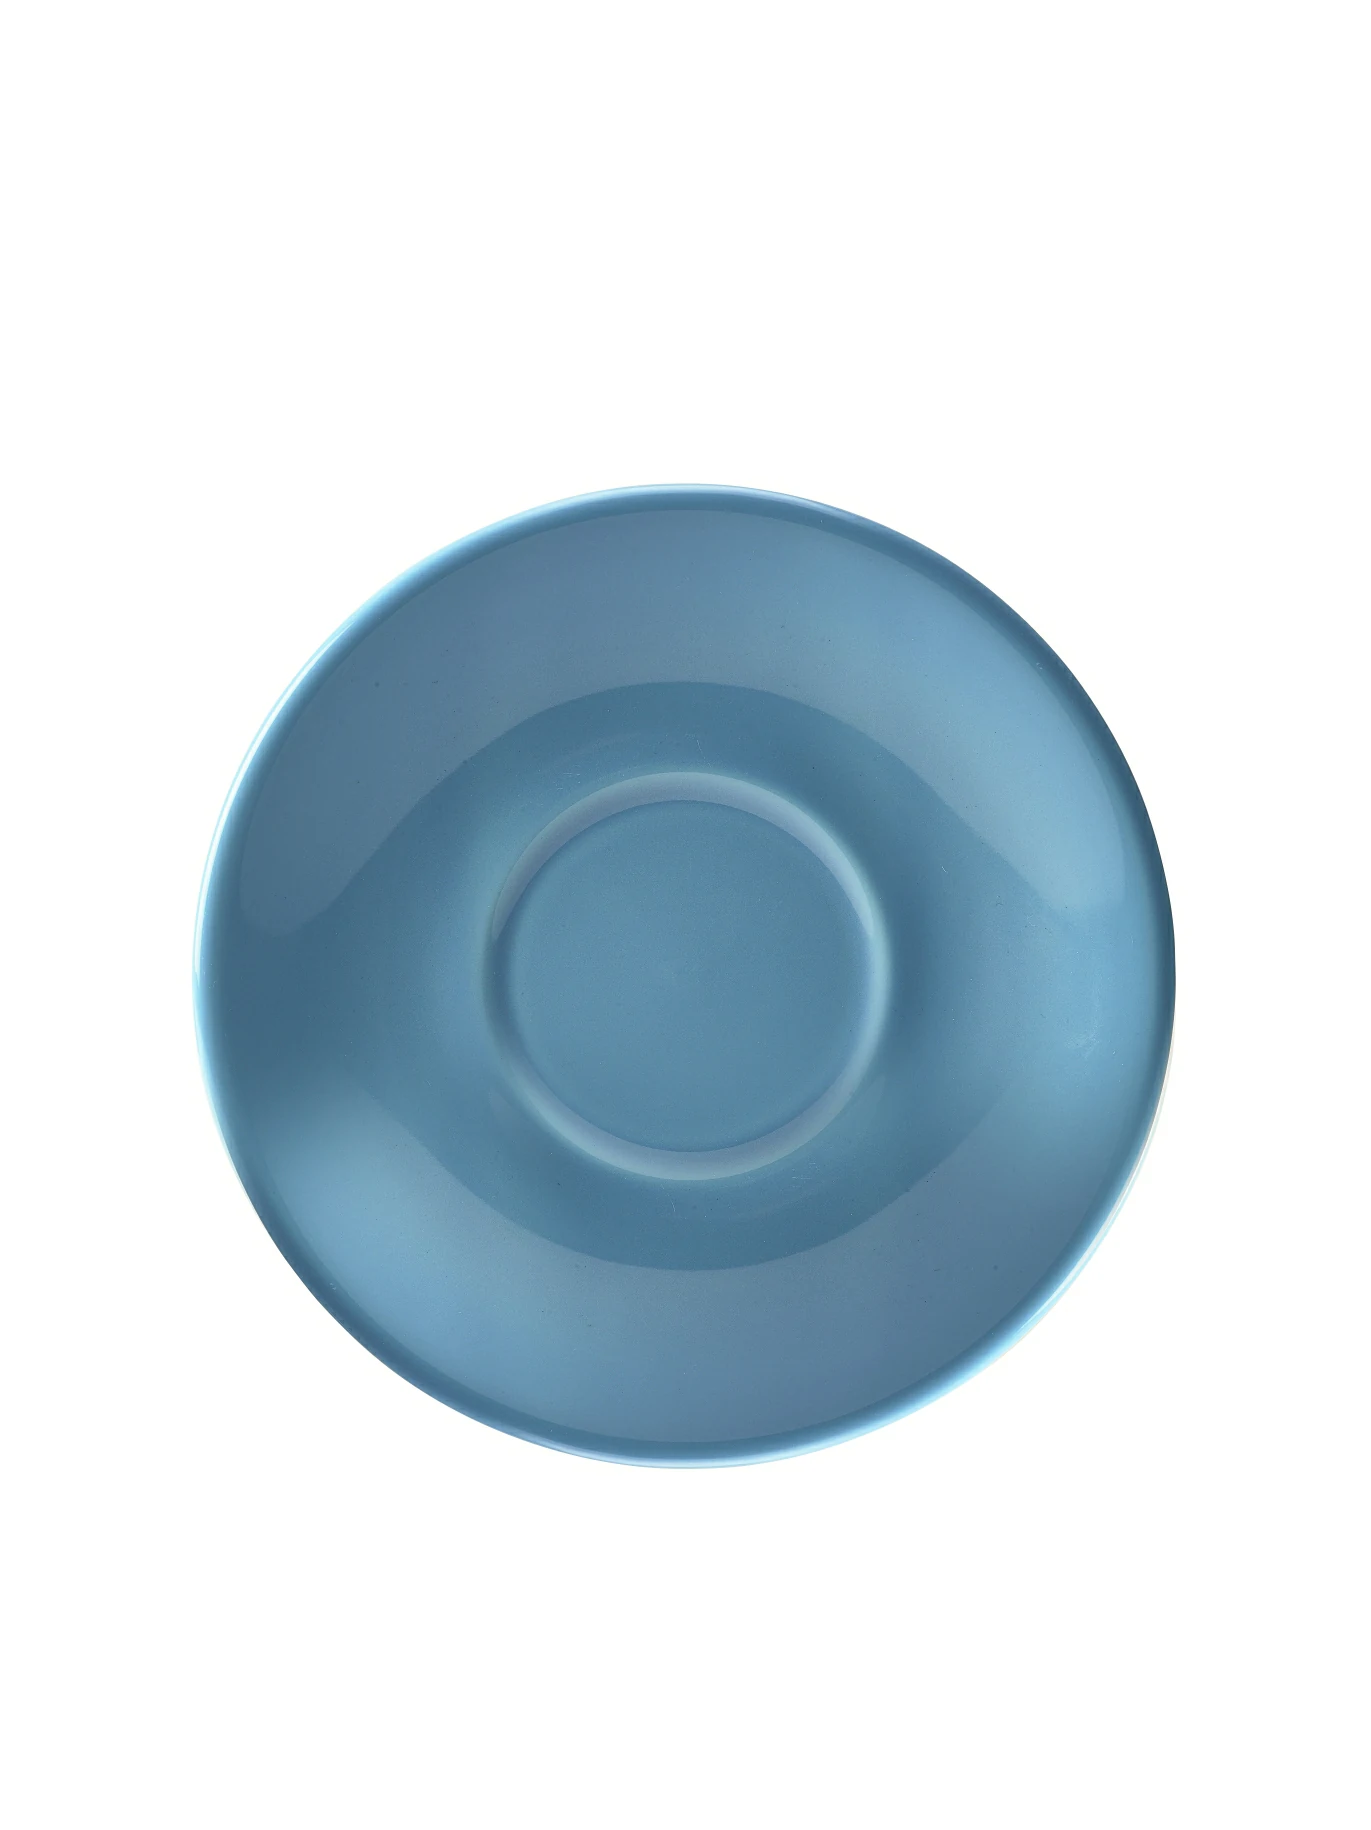 Genware Porcelain Blue Saucer 16cm/6.25"